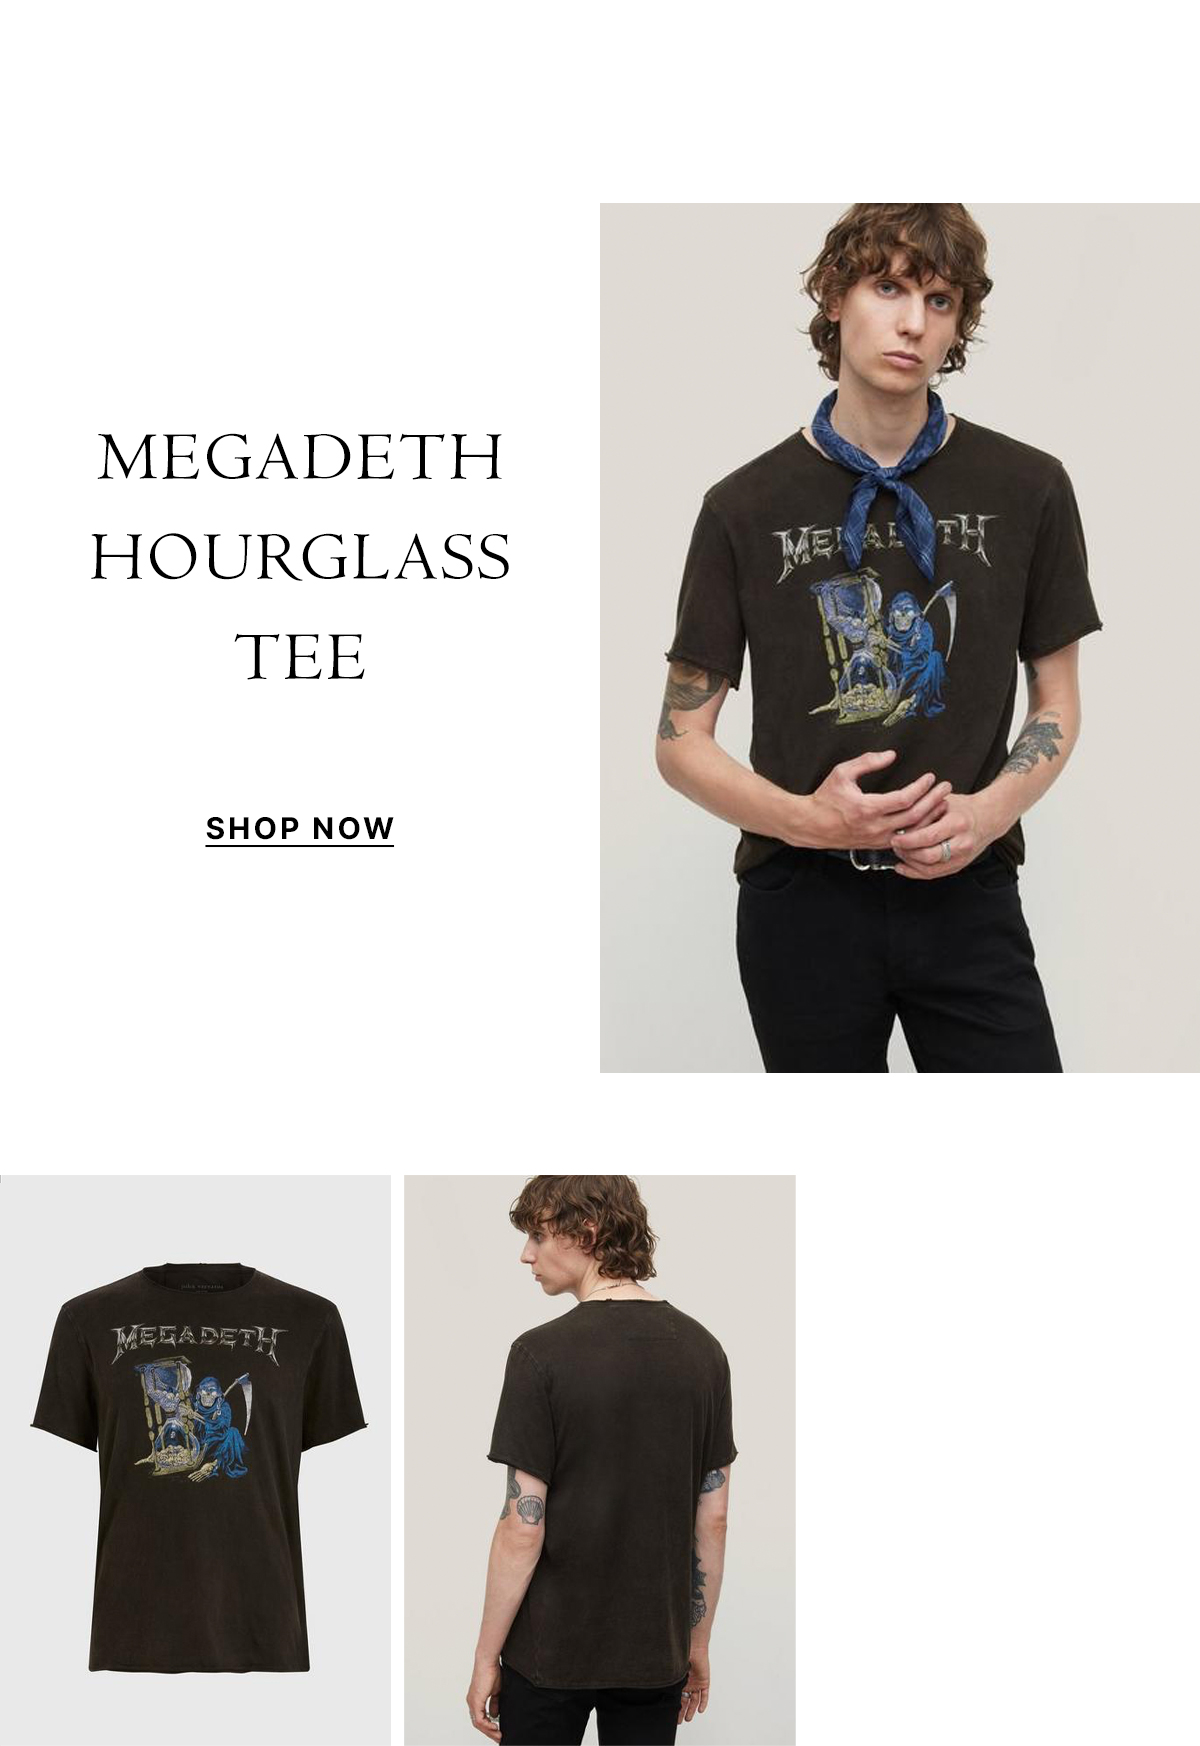 MEGADETH HOURGLASS TEE